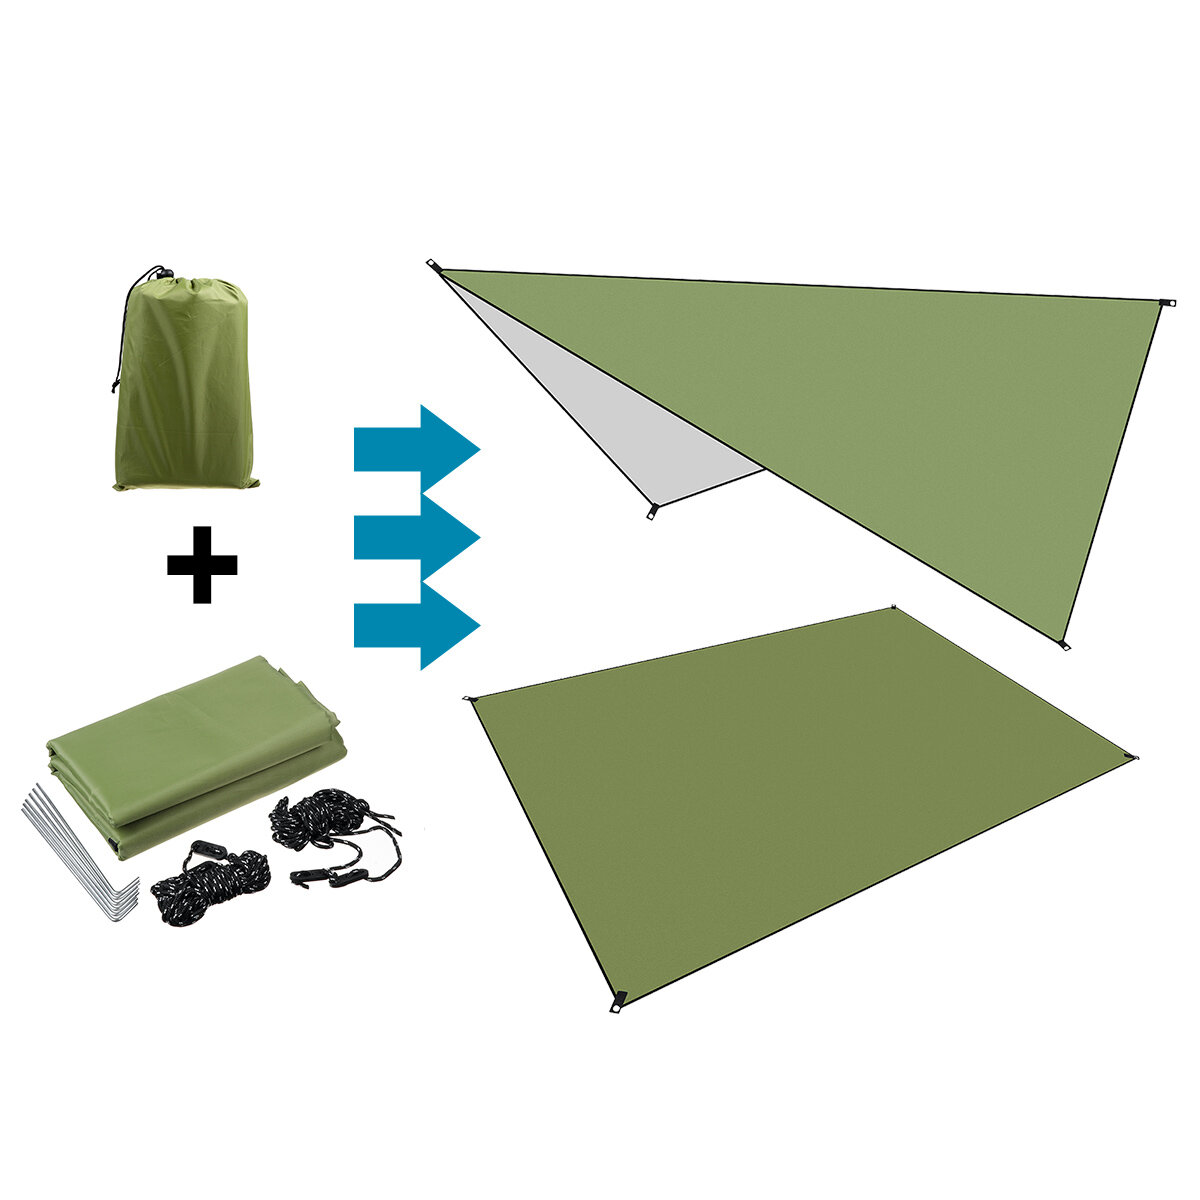 210D ткань Оксфорд армейский зеленый влагостойкая палатка укрытие складной тент брезент гамак дождь зонтик коврик для пикника На открытом в